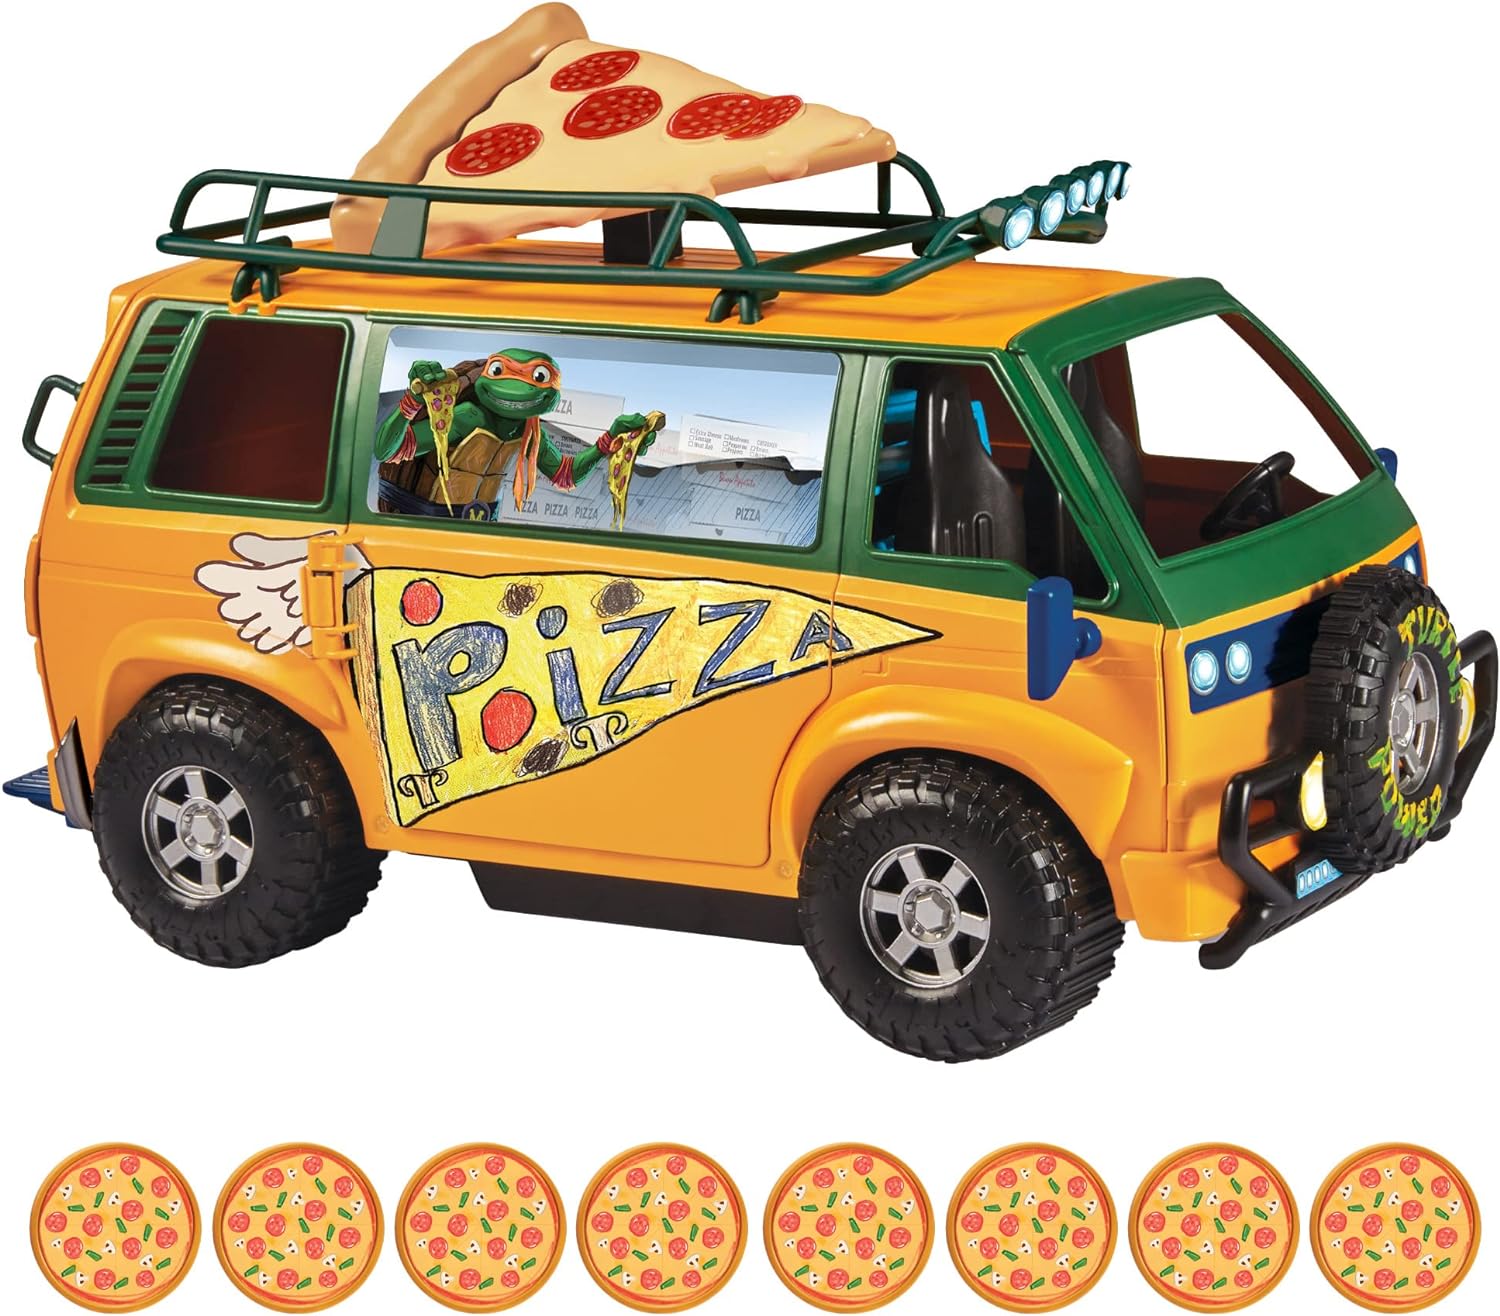 Der Preis für den Teenage Mutant Ninja Turtles Movie Pizza Fire Van beträgt 39,99 £